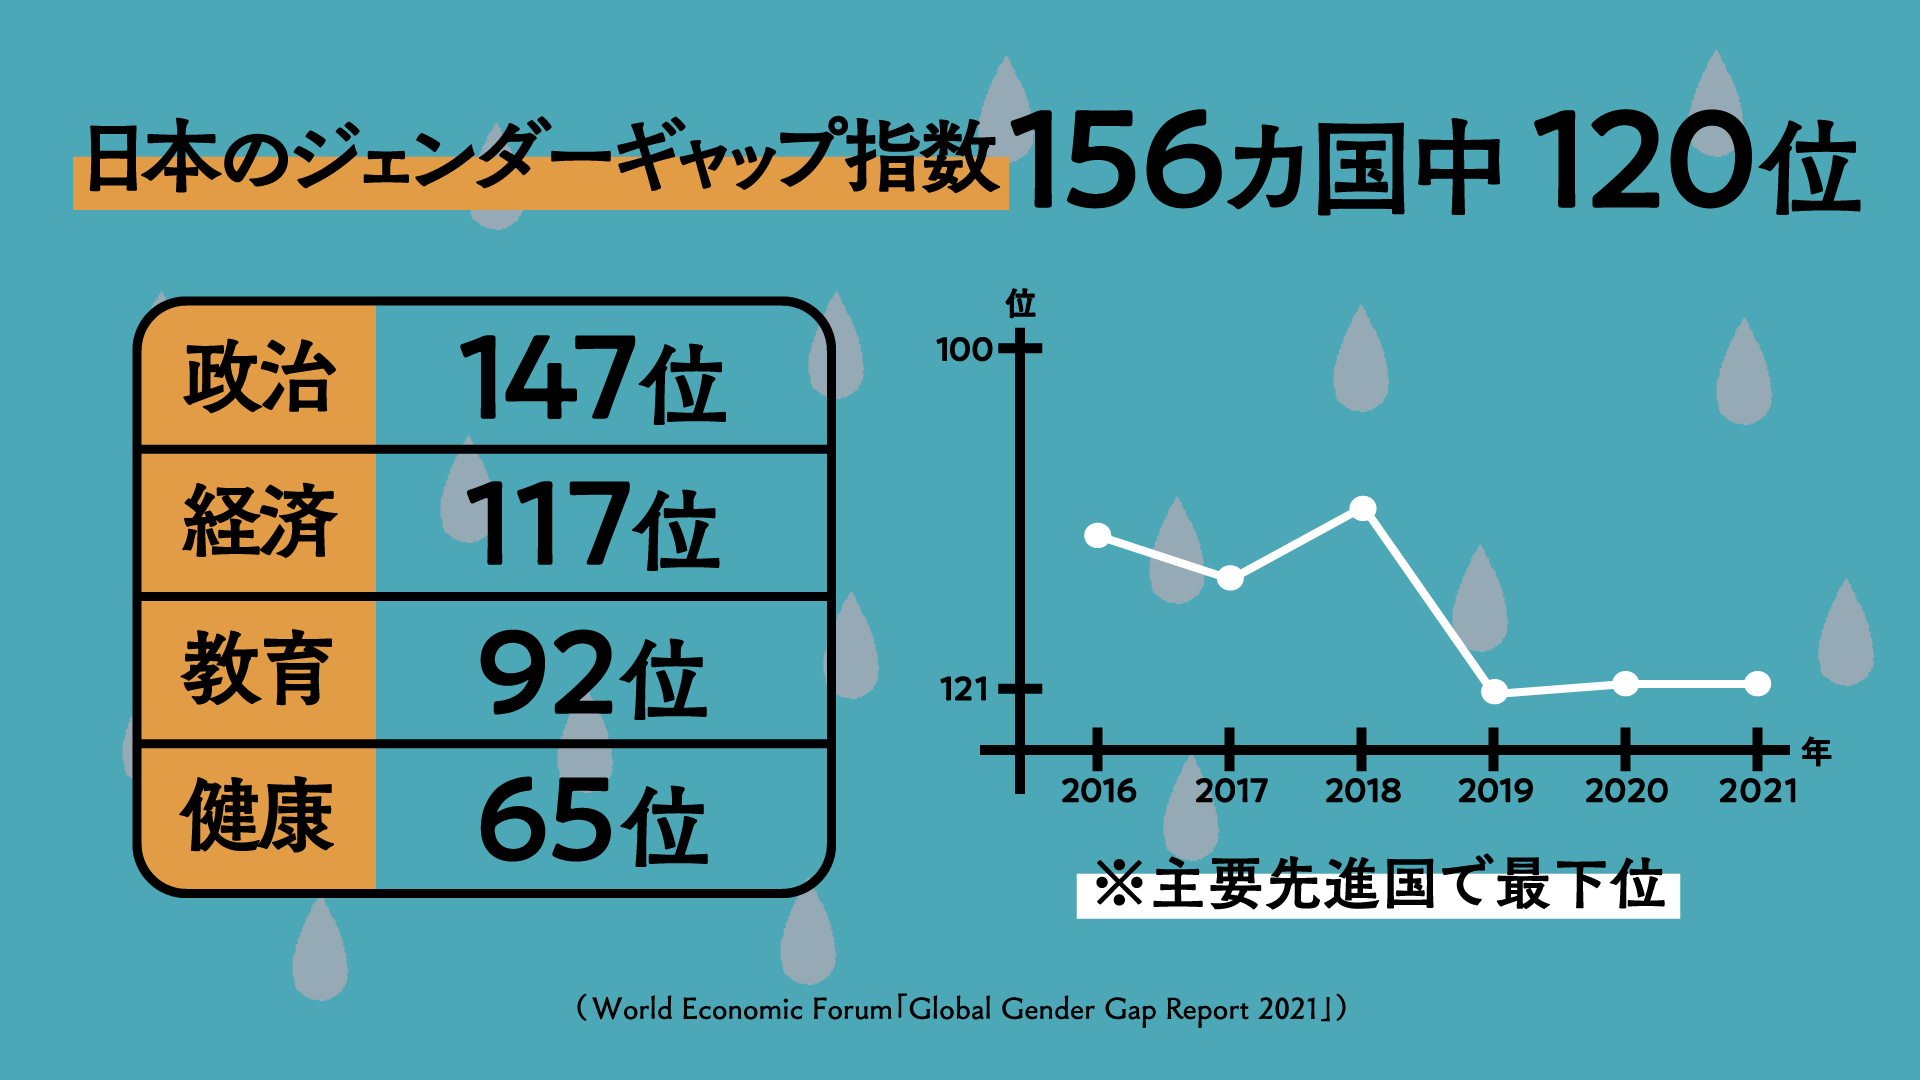 日本の「ジェンダー・ギャップ指数」は156か国中120位